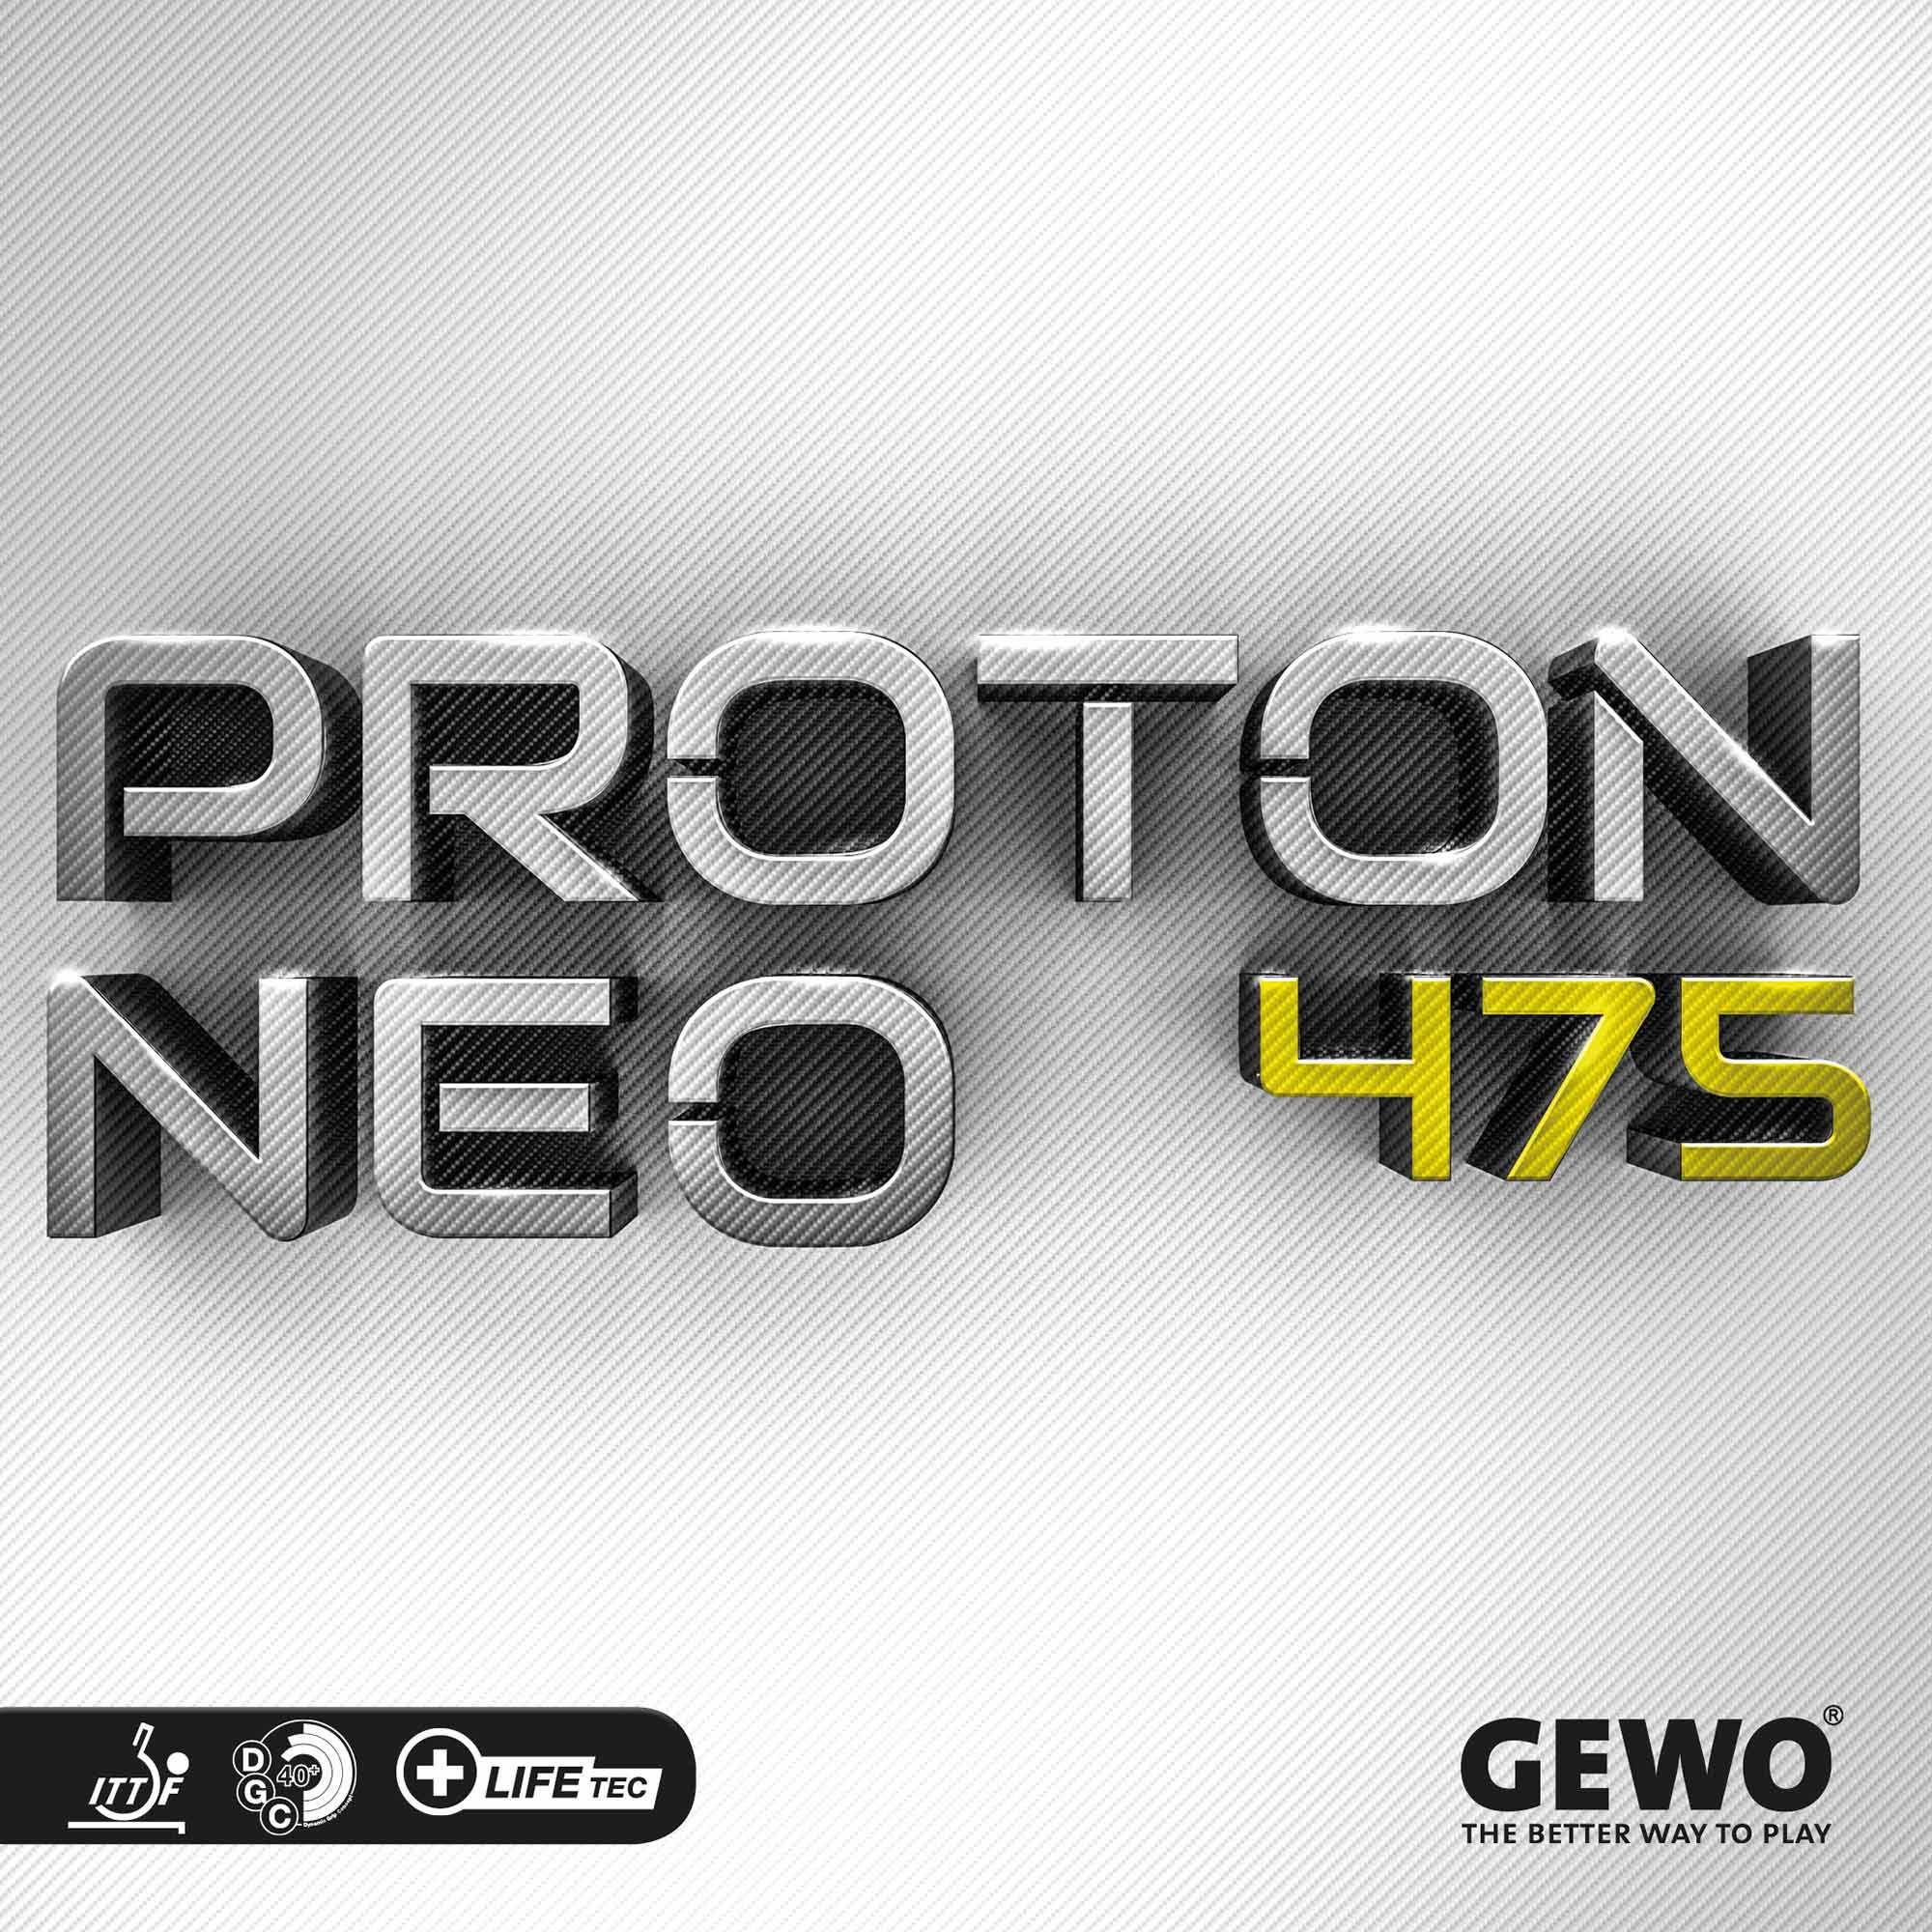 GEWO Rubber Proton Neo 475